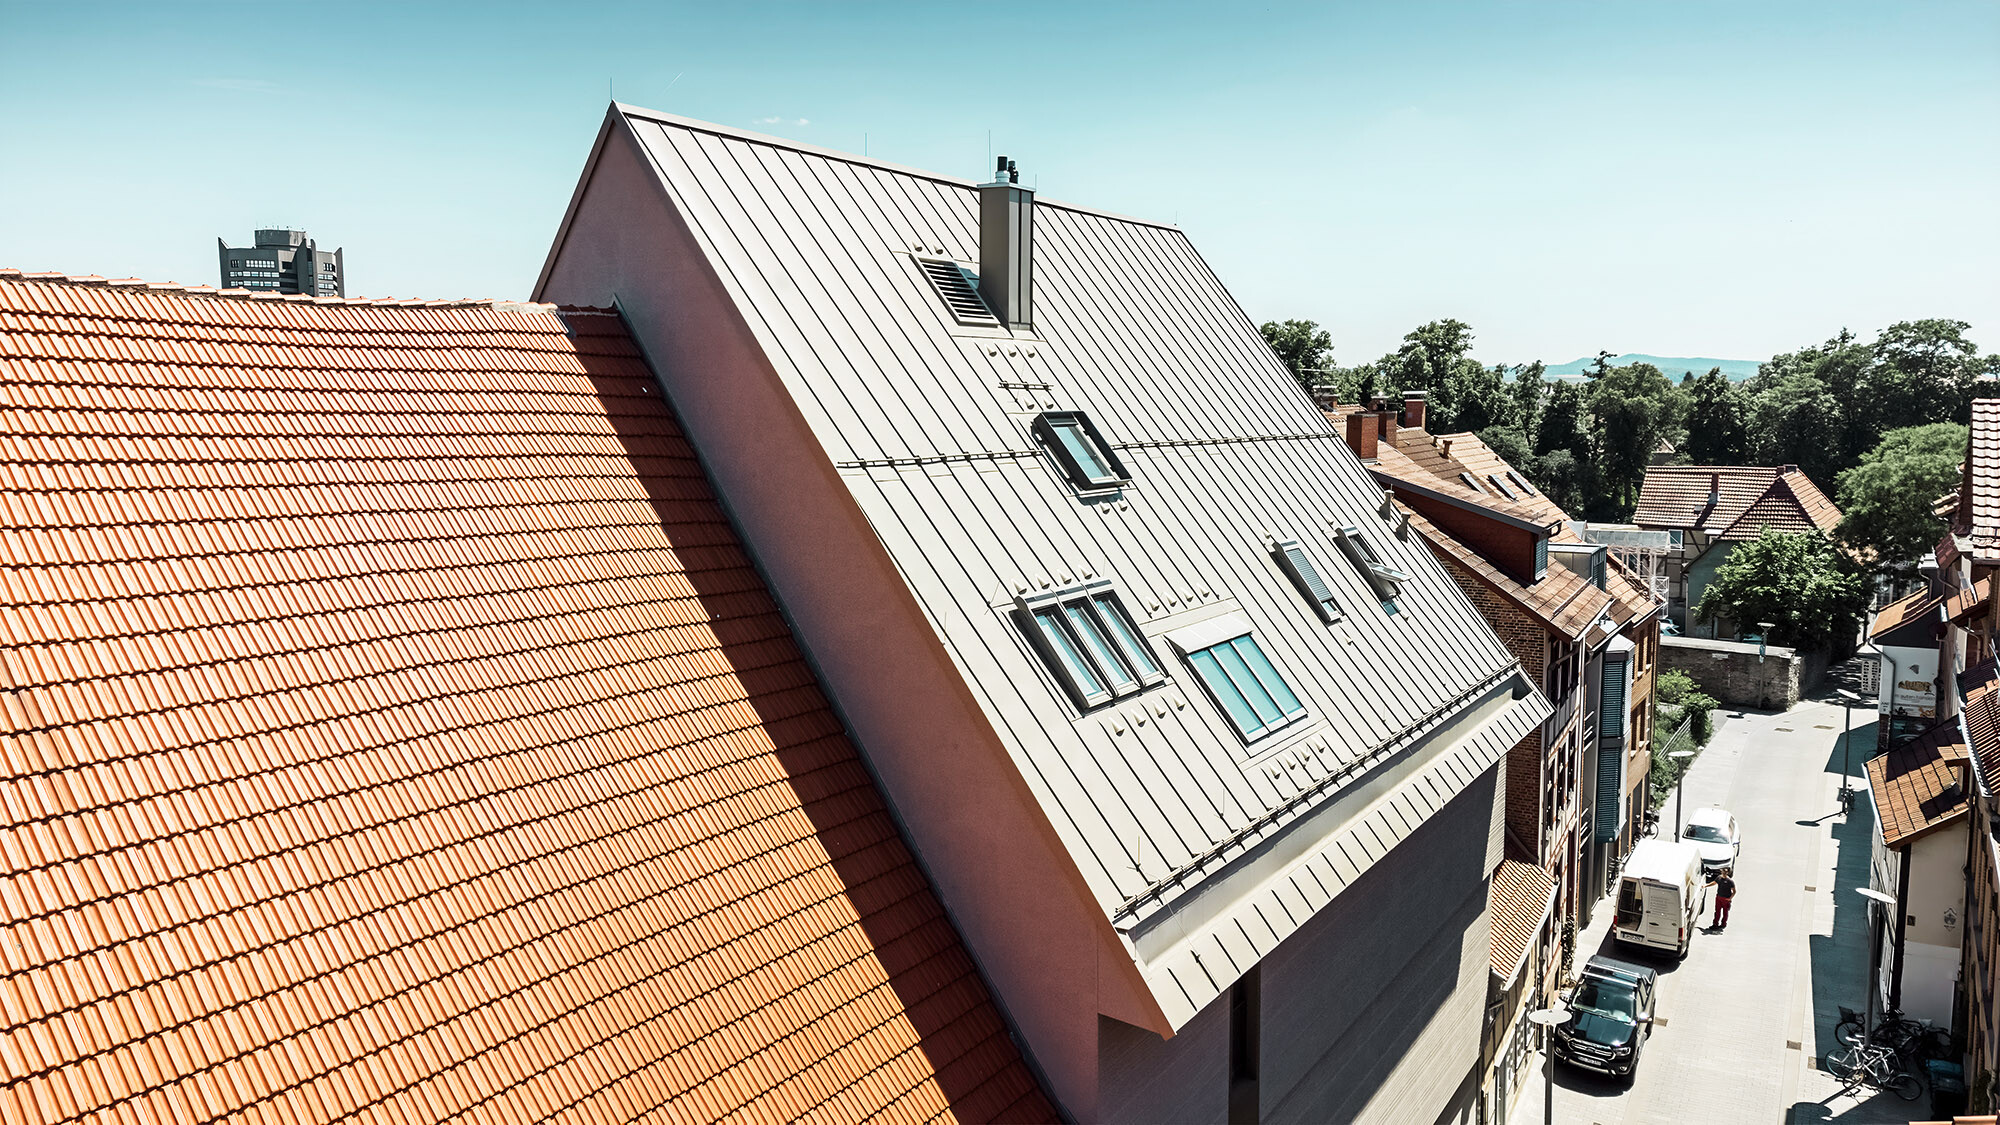 Une vue latérale de ce toit exceptionnel, à côté de constructions en tuiles plates de couleur rouille.